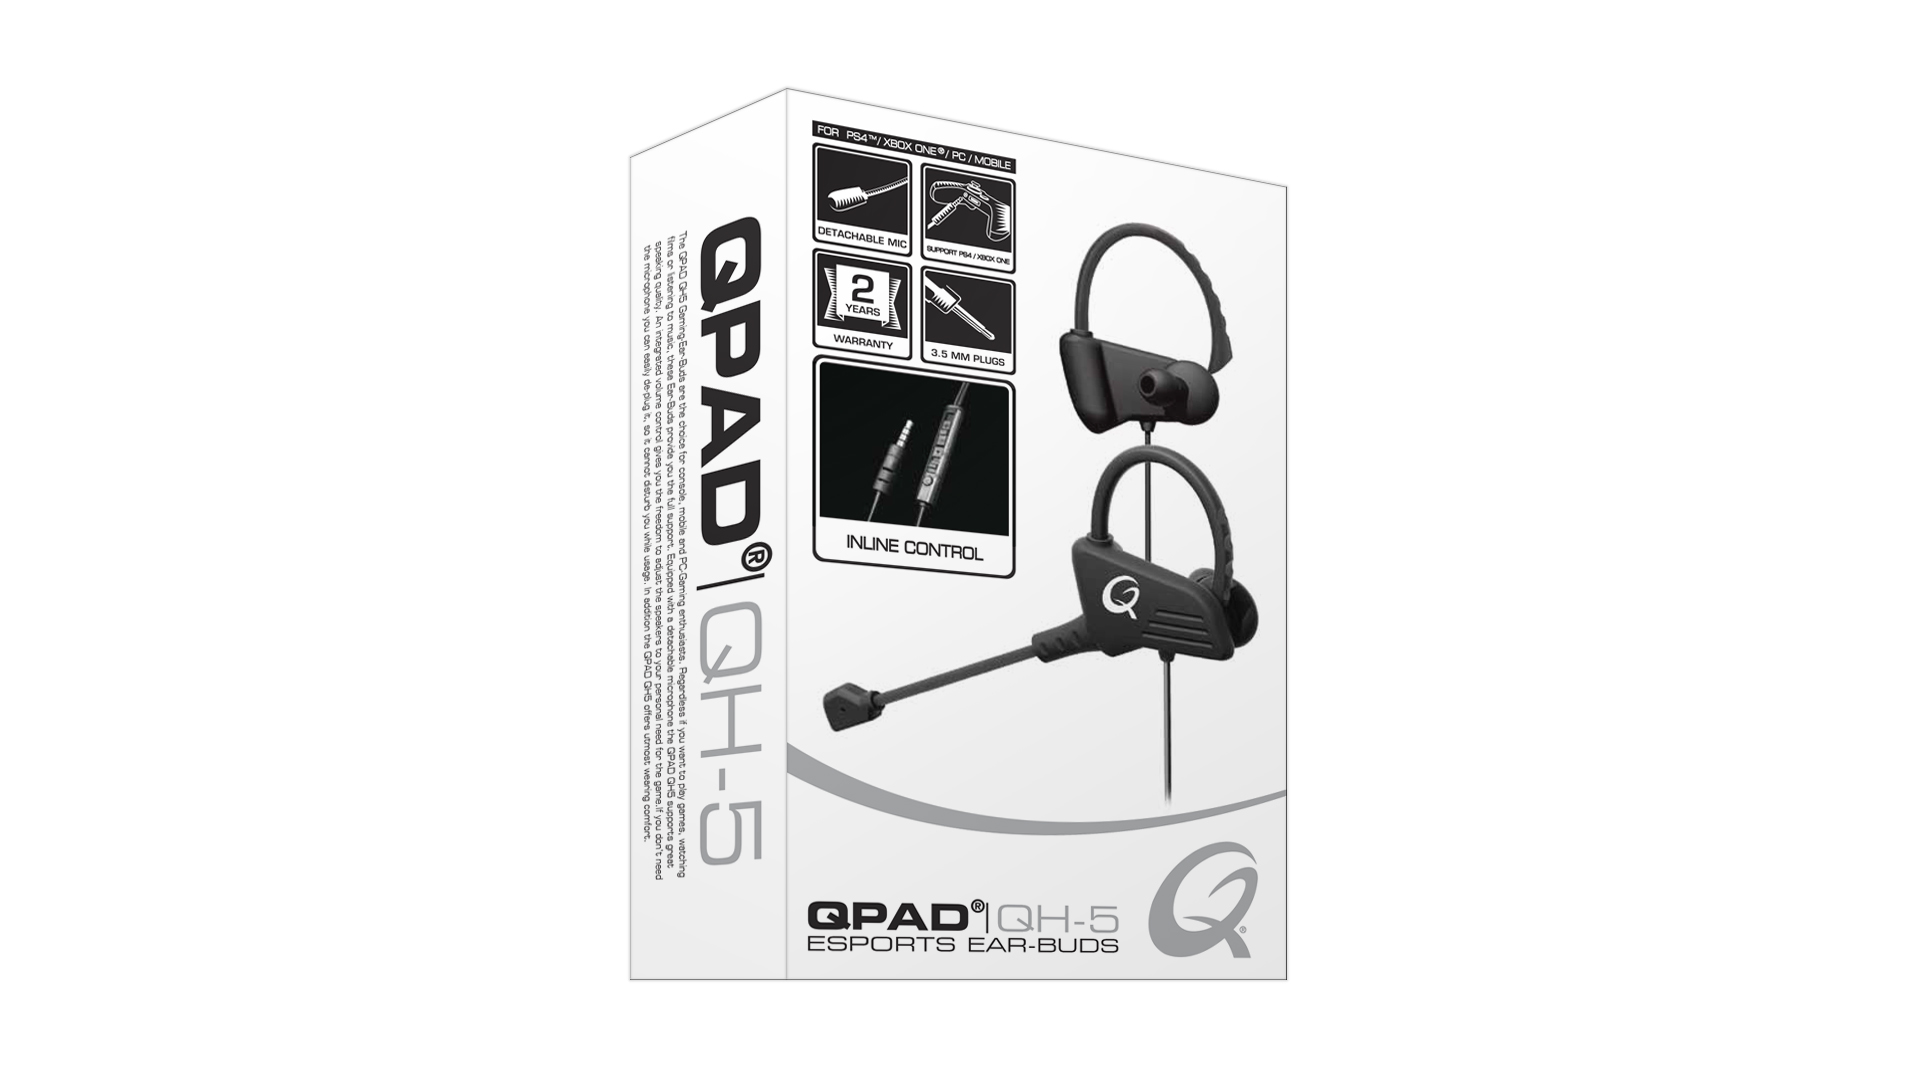 Qpad Esports Ear-Buds